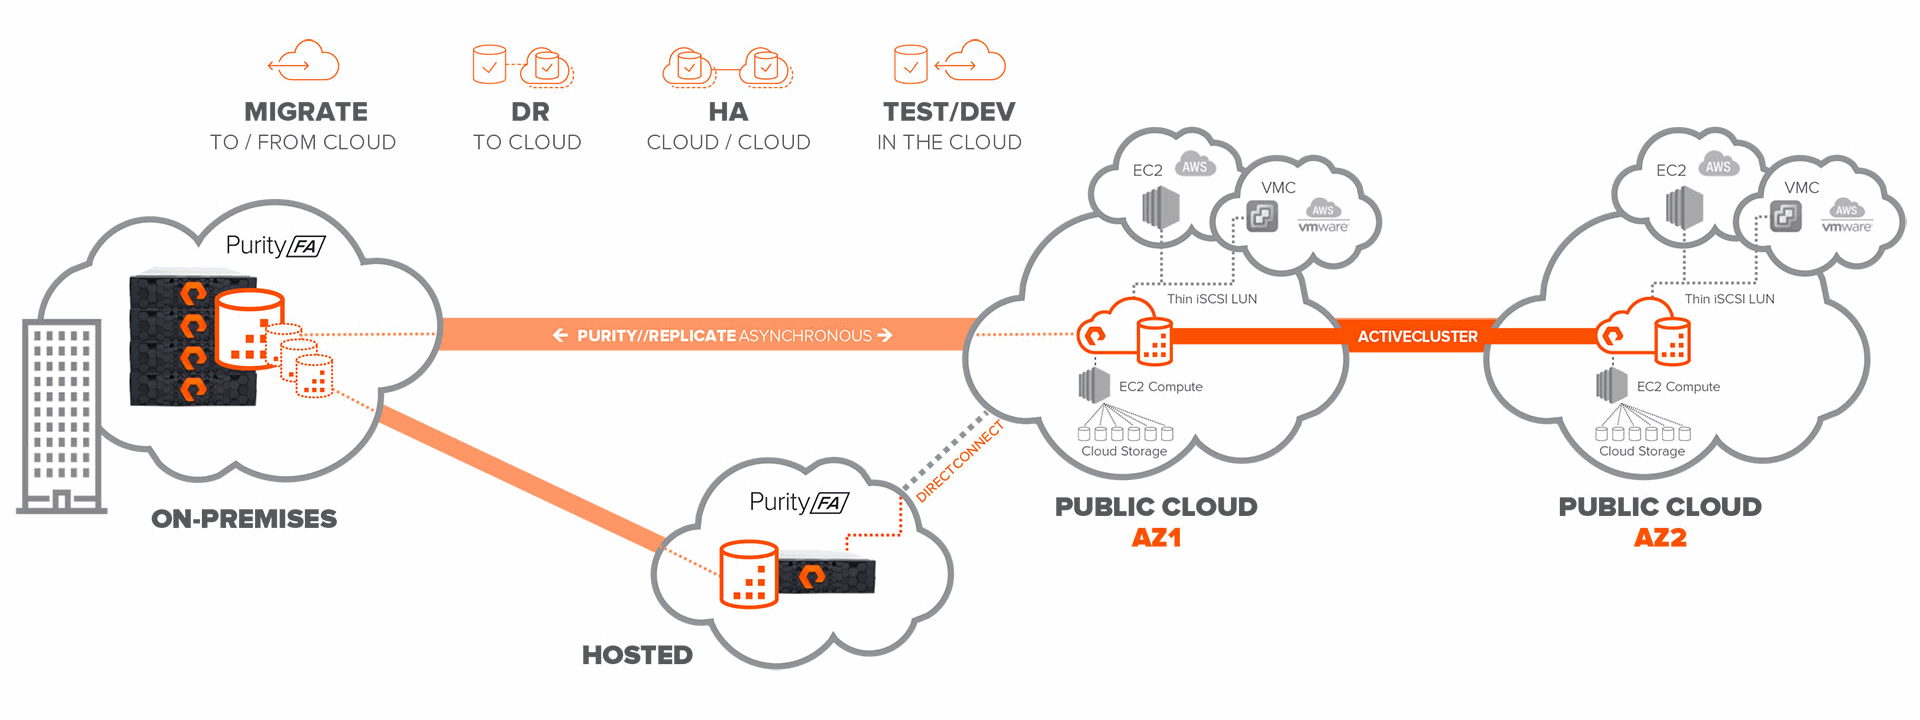 cloud-block-store-diagram.png.imgo.png